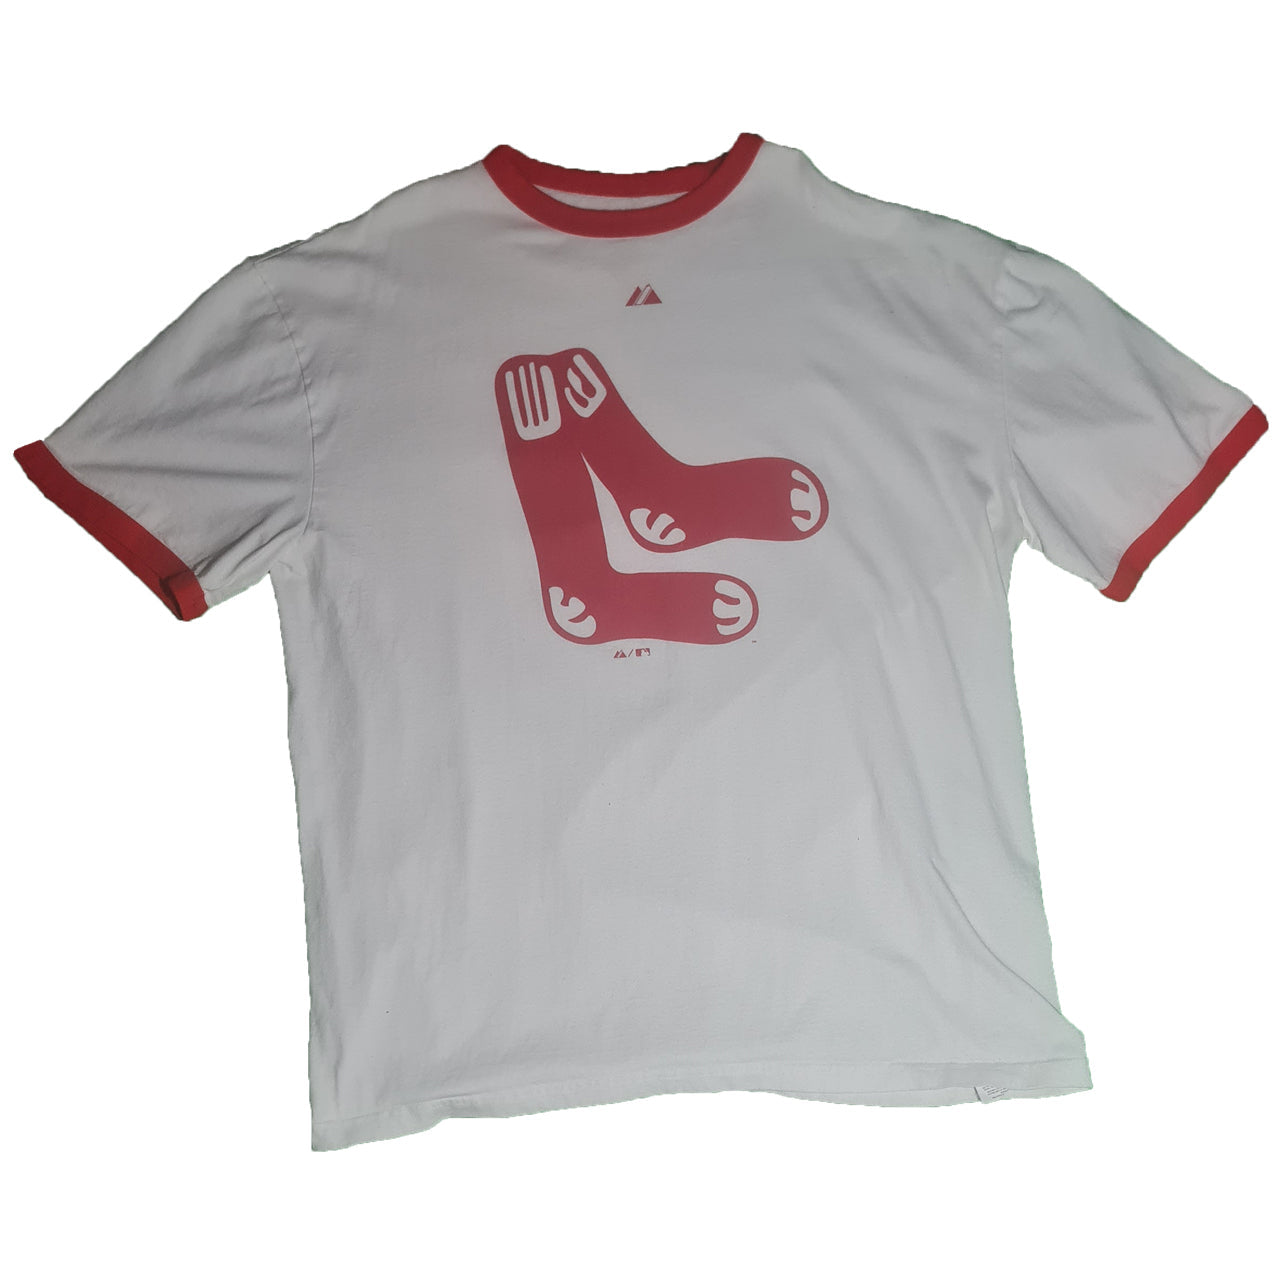 Mr. Sox Fashion Vintage Tshirt T Shirts Boston Massachusetts Red